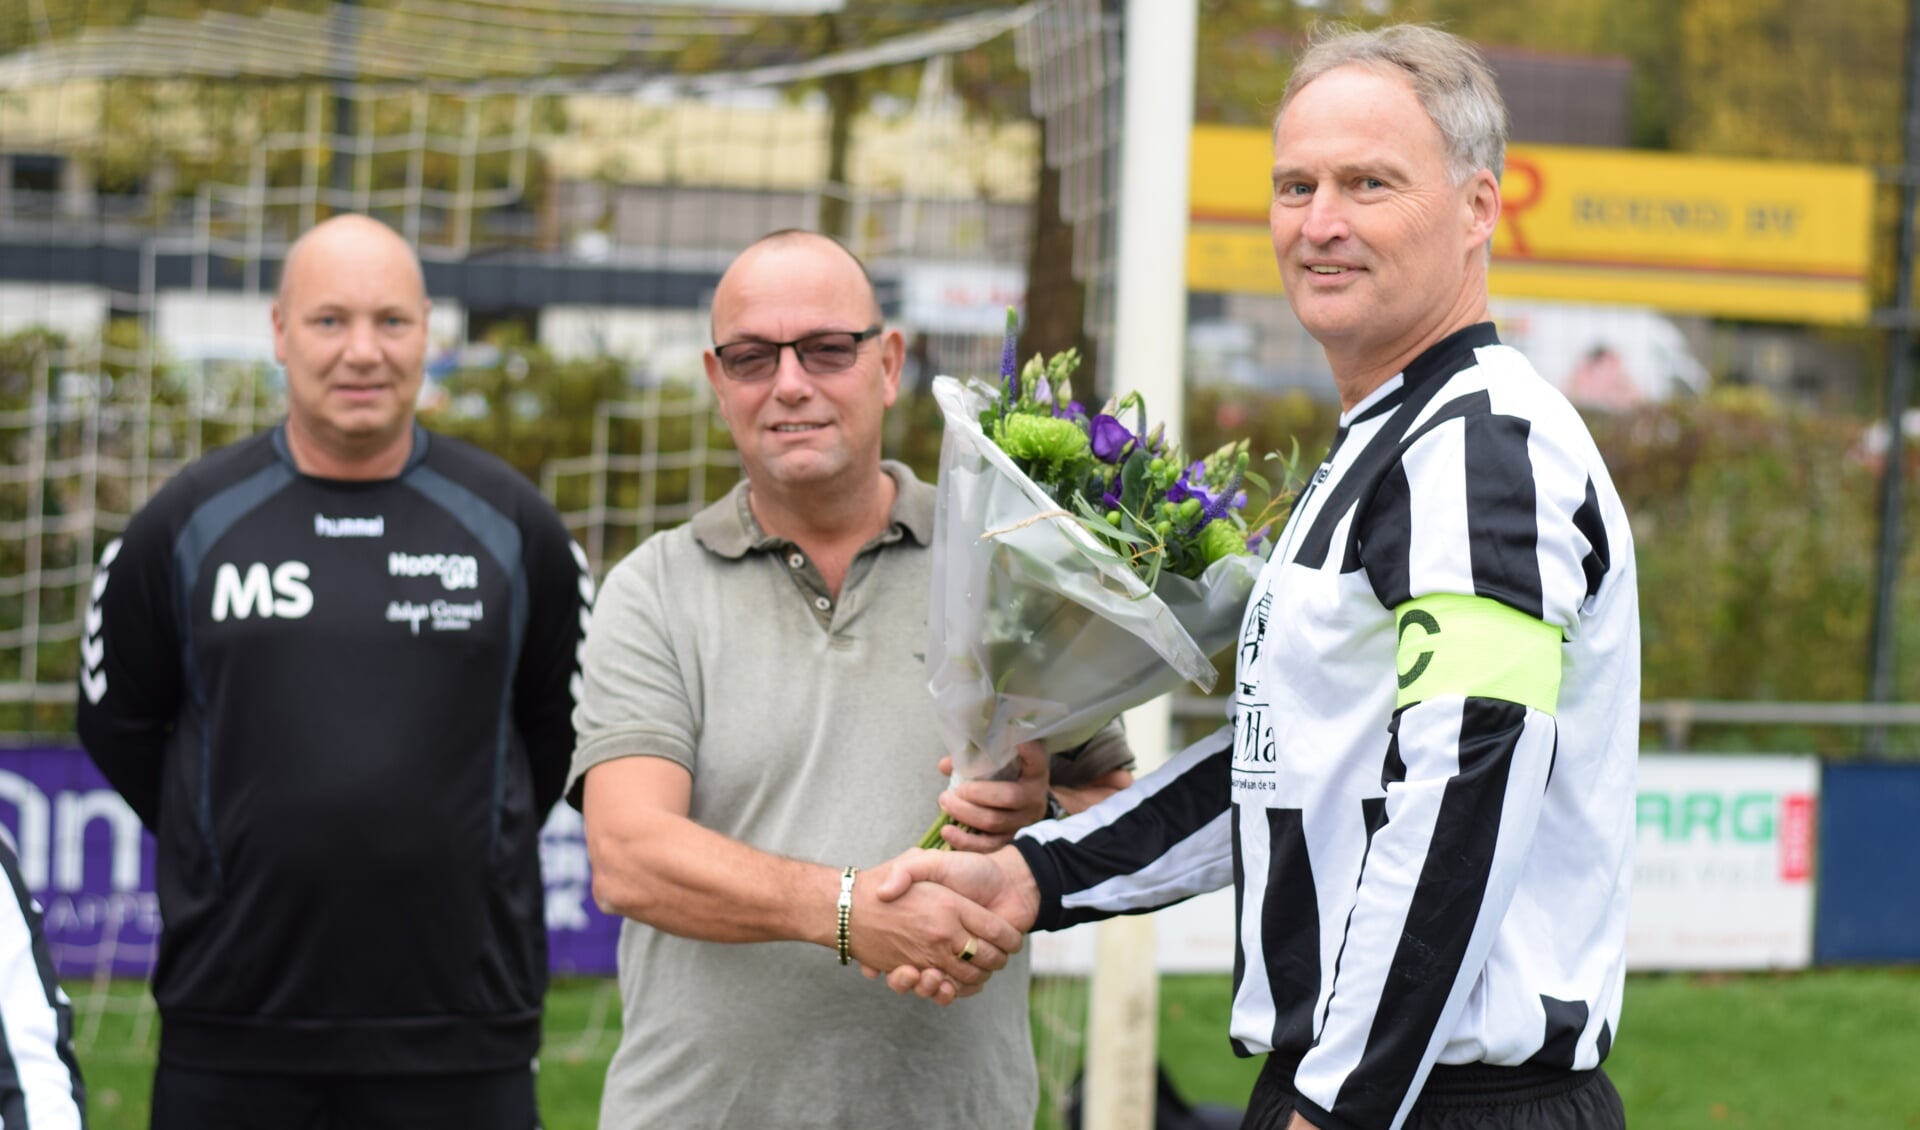 Aanvoerder Gerbert Tiecken bedankt sponsor Jonny Ankersmit van Bi-j Nolda met een boeket bloemen. Foto: PR